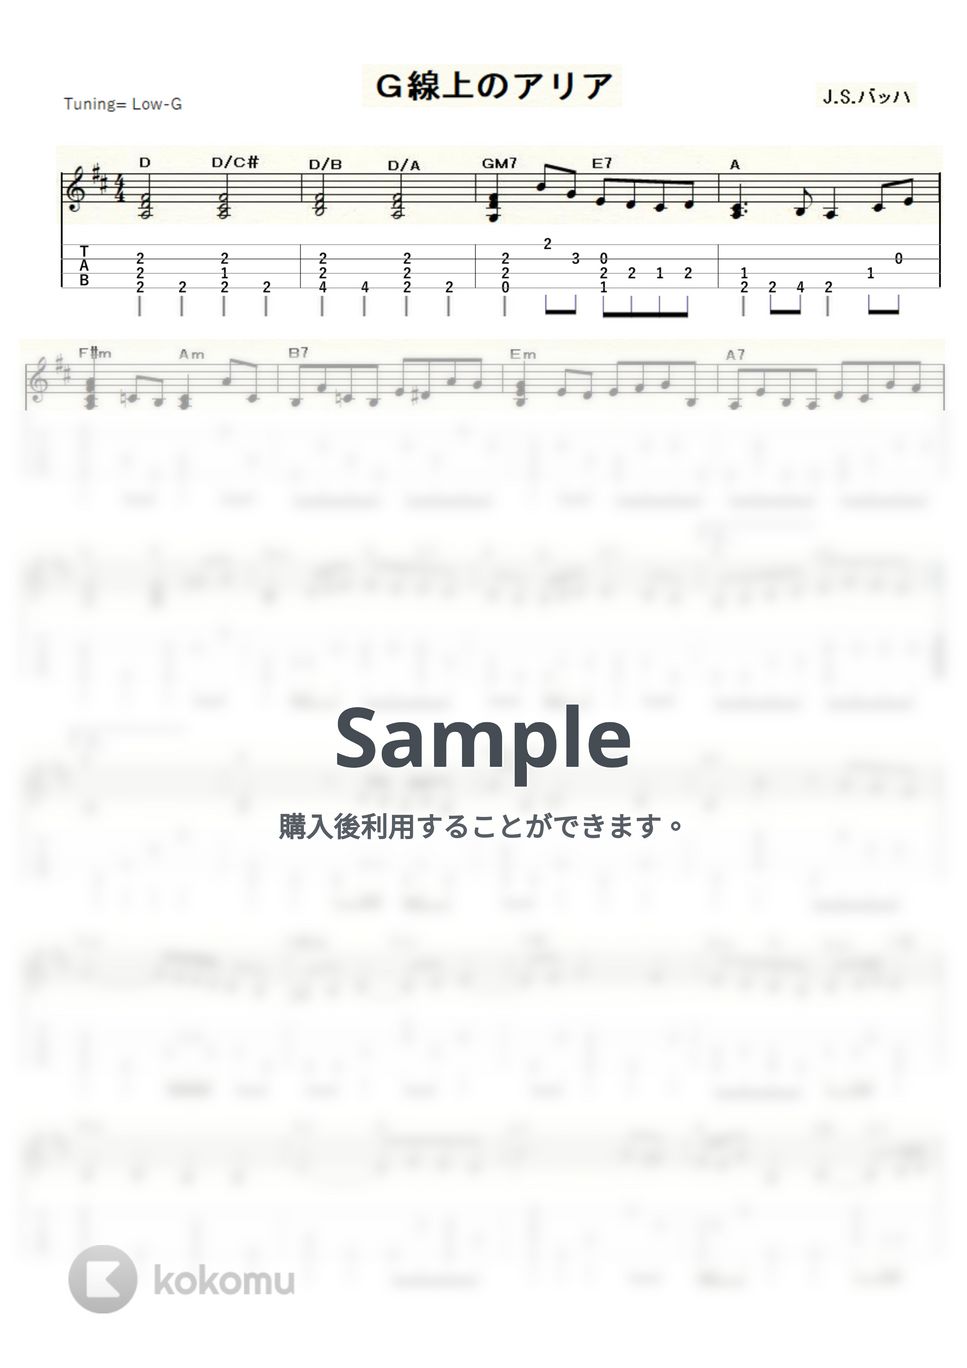 J.S.バッハ - G線上のアリア (ｳｸﾚﾚｿﾛ / Low-G / 中級) by ukulelepapa